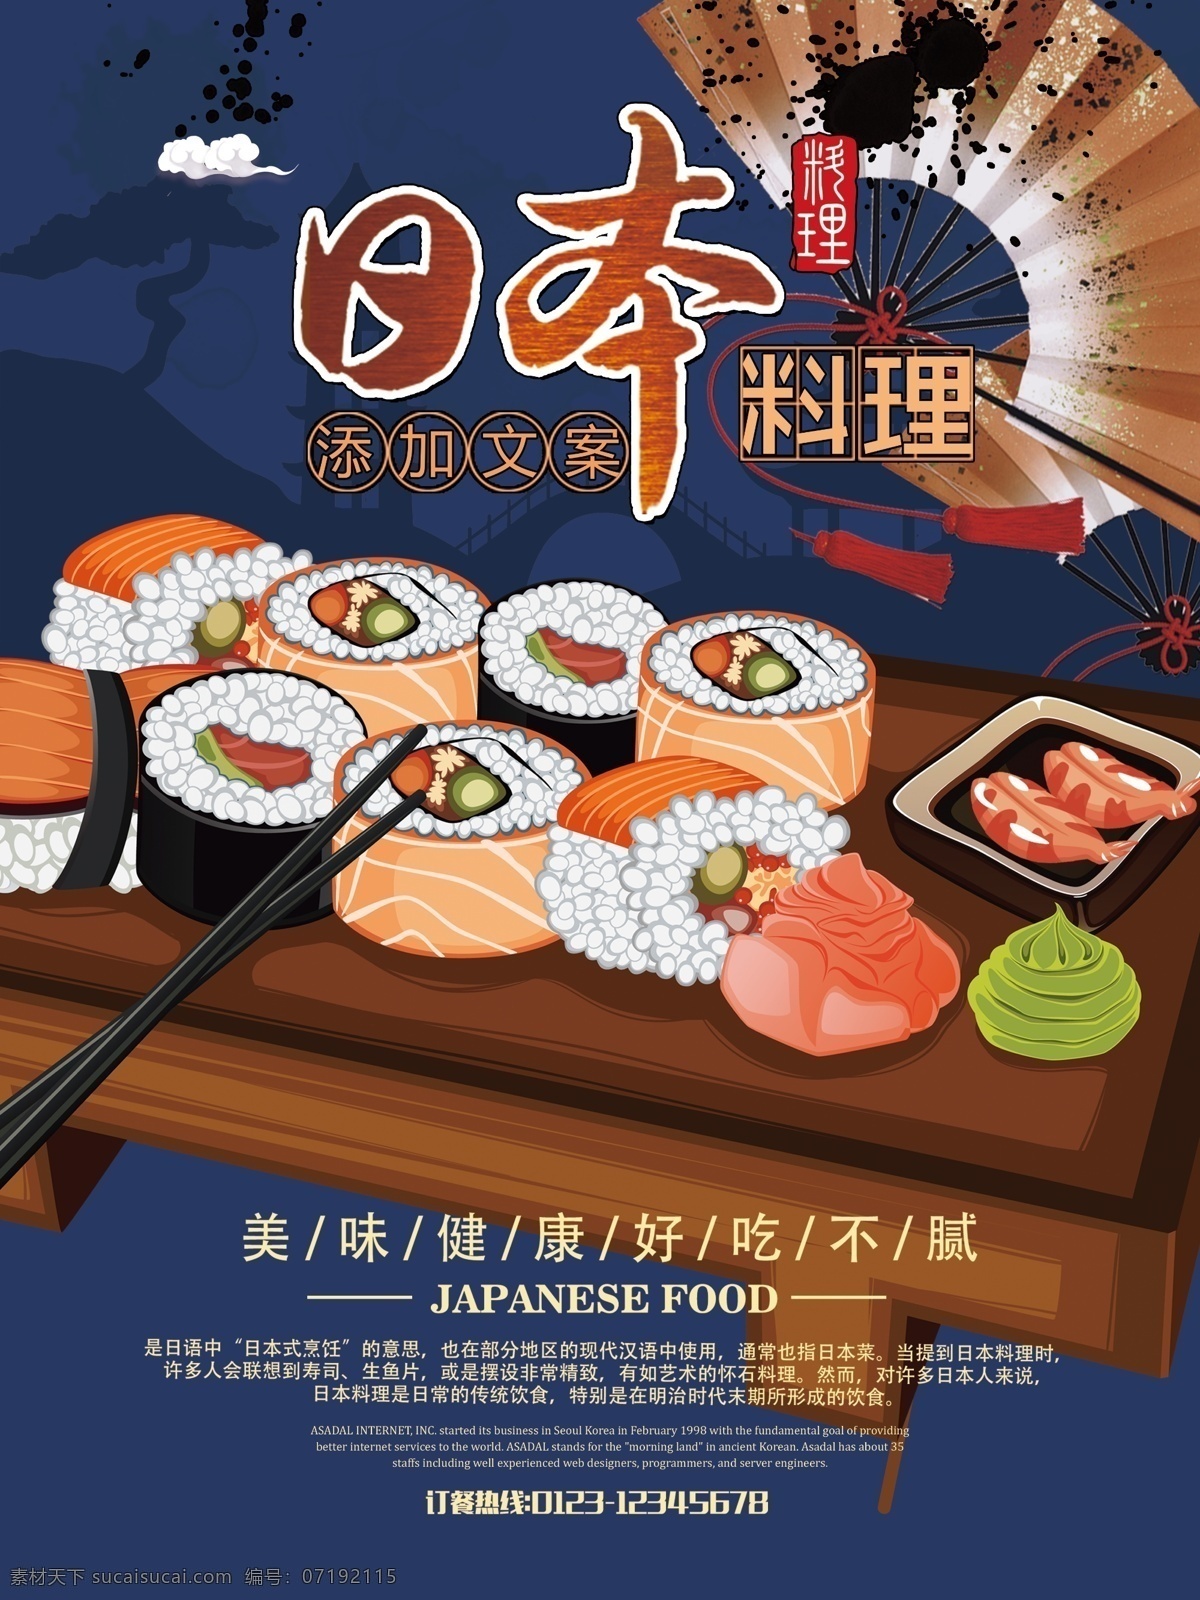 日本料理 没收 寿司 海报 宣传画 展板 美食海报 宣传海报 日本文化 扇子 健康美食 美食插画 吃货